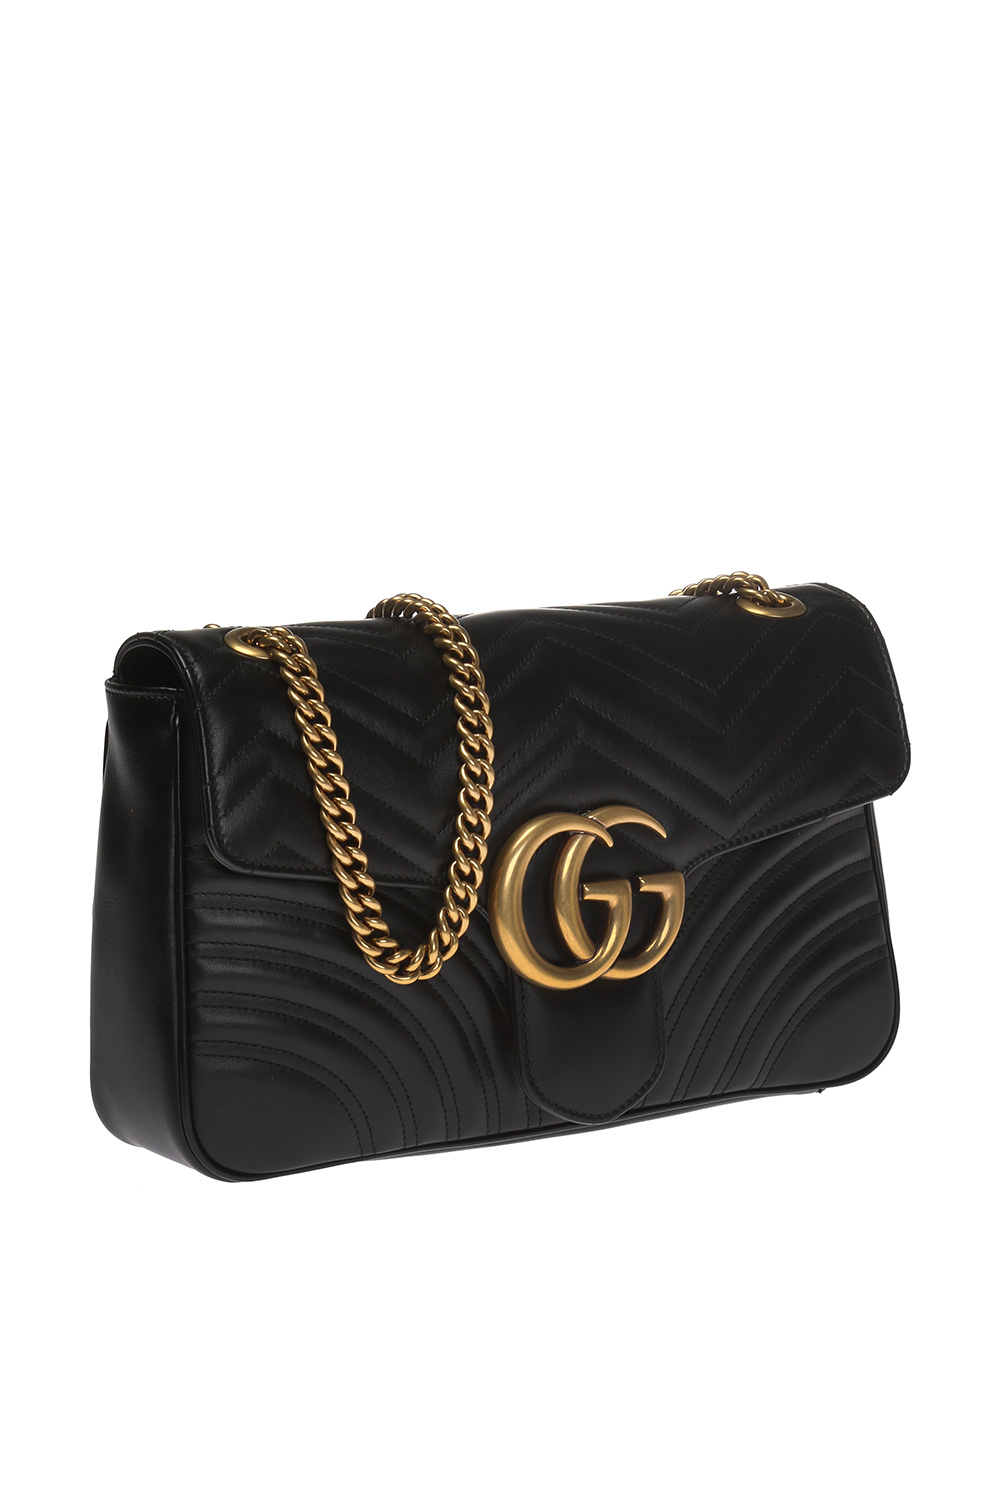 GUCCI GG Marmont Matelasse Leather Shoulder Bag Black 443496-US